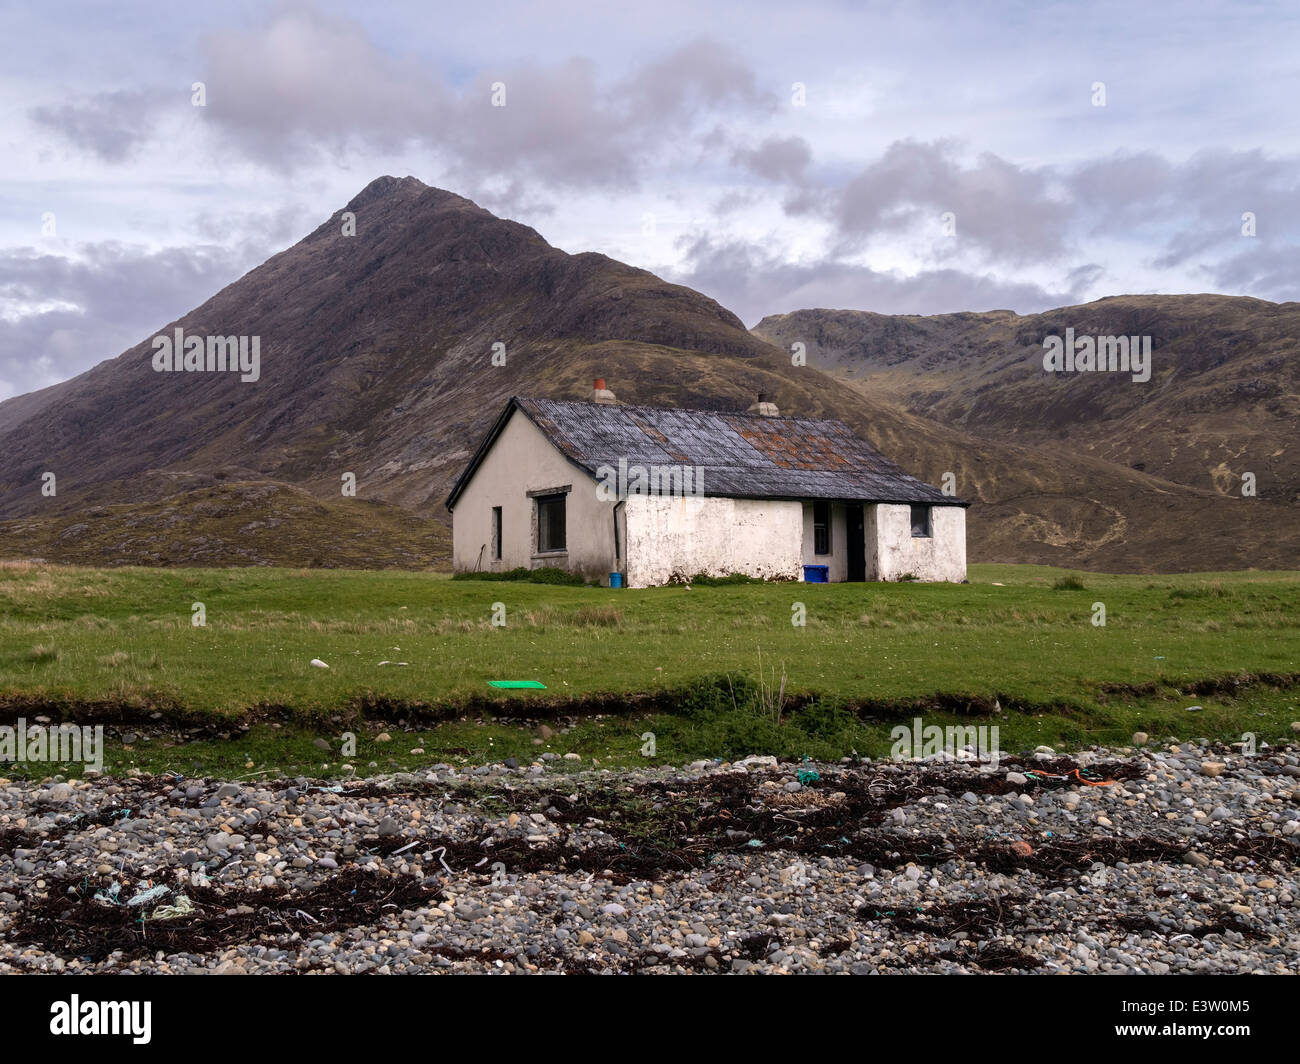 Old Camasunary Bothy / Walkers Hut, avec Blaven dans les montagnes écossaises Cuillin au-delà, île de Skye, Écosse, Royaume-Uni Banque D'Images